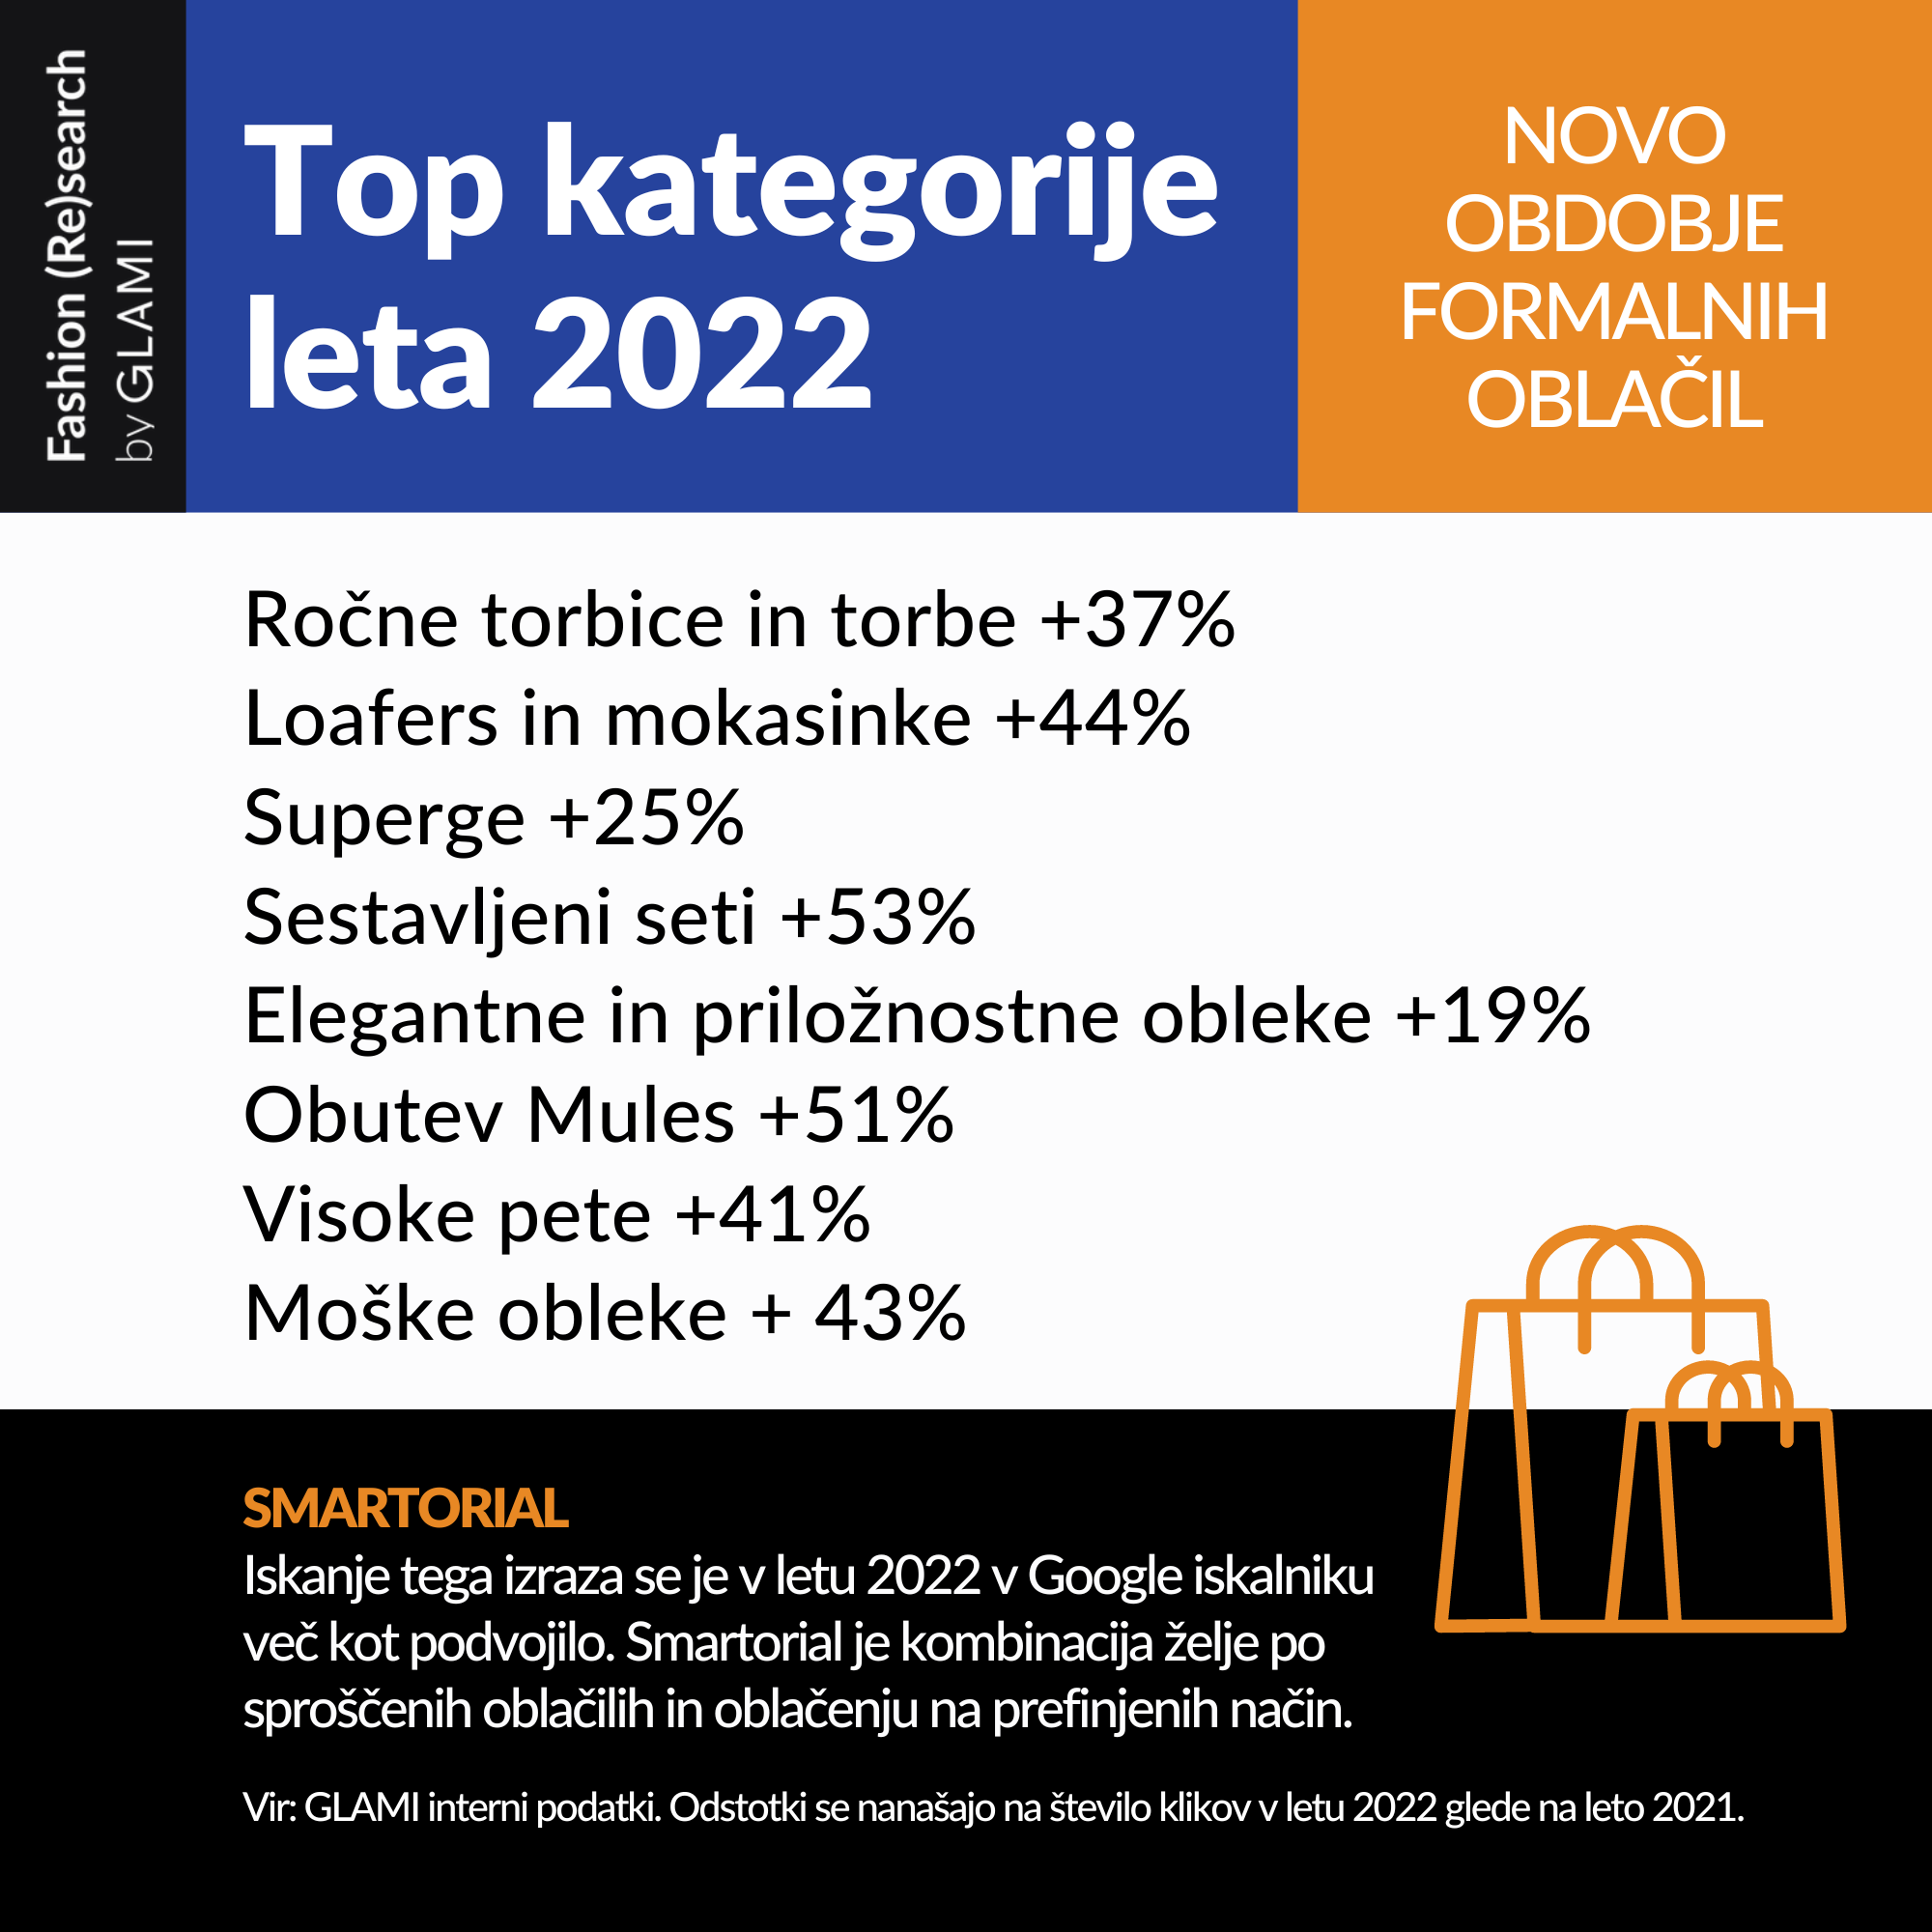 Top kategorije leta 2022 - Modna.si